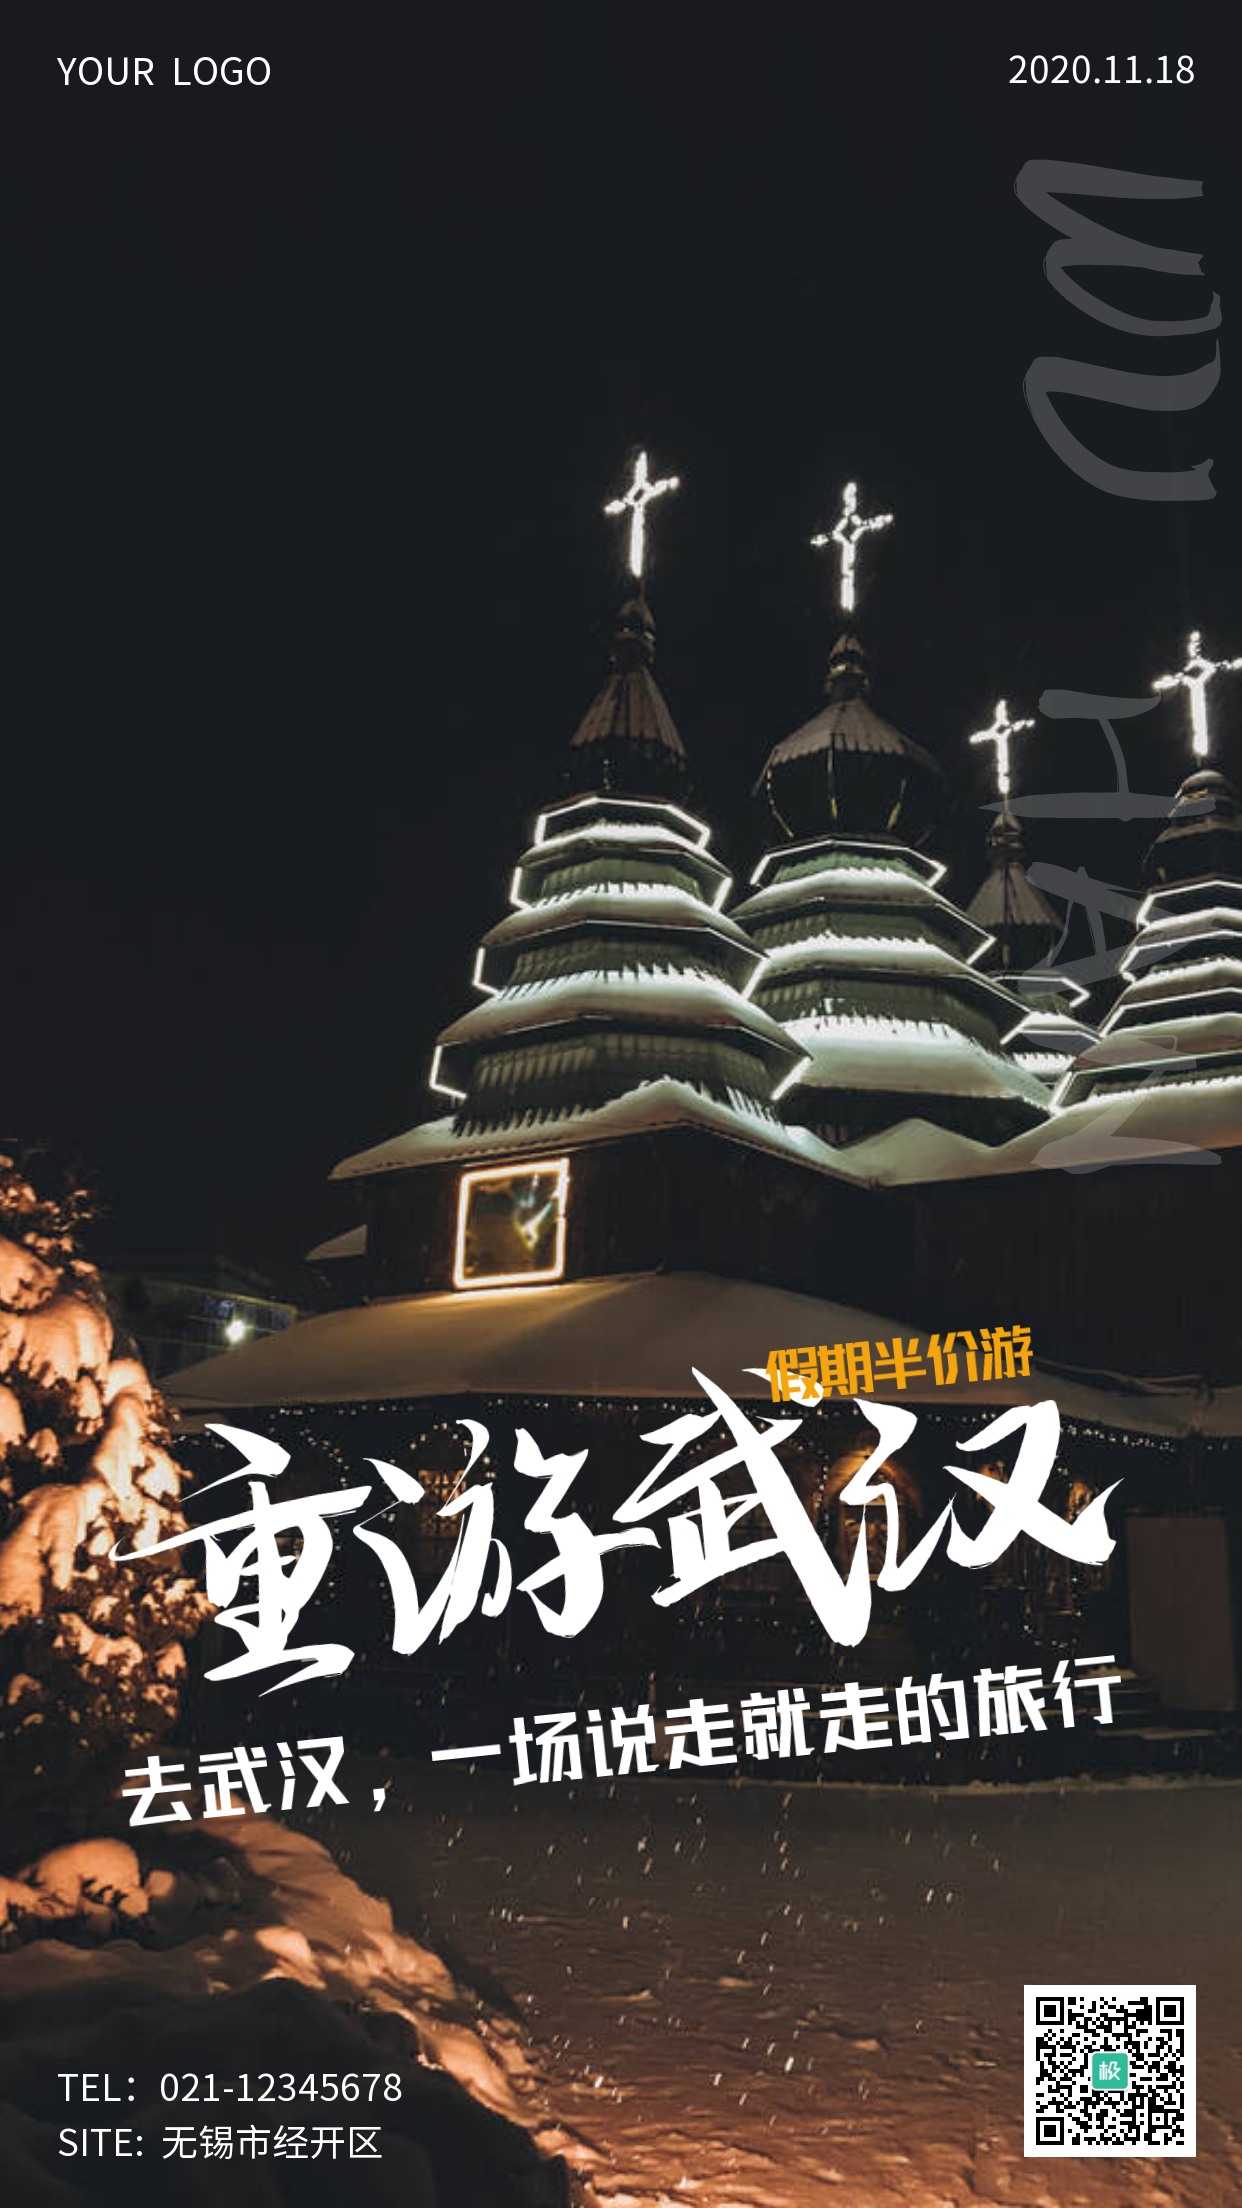 创意摄影风简约武汉旅行手机营销海报